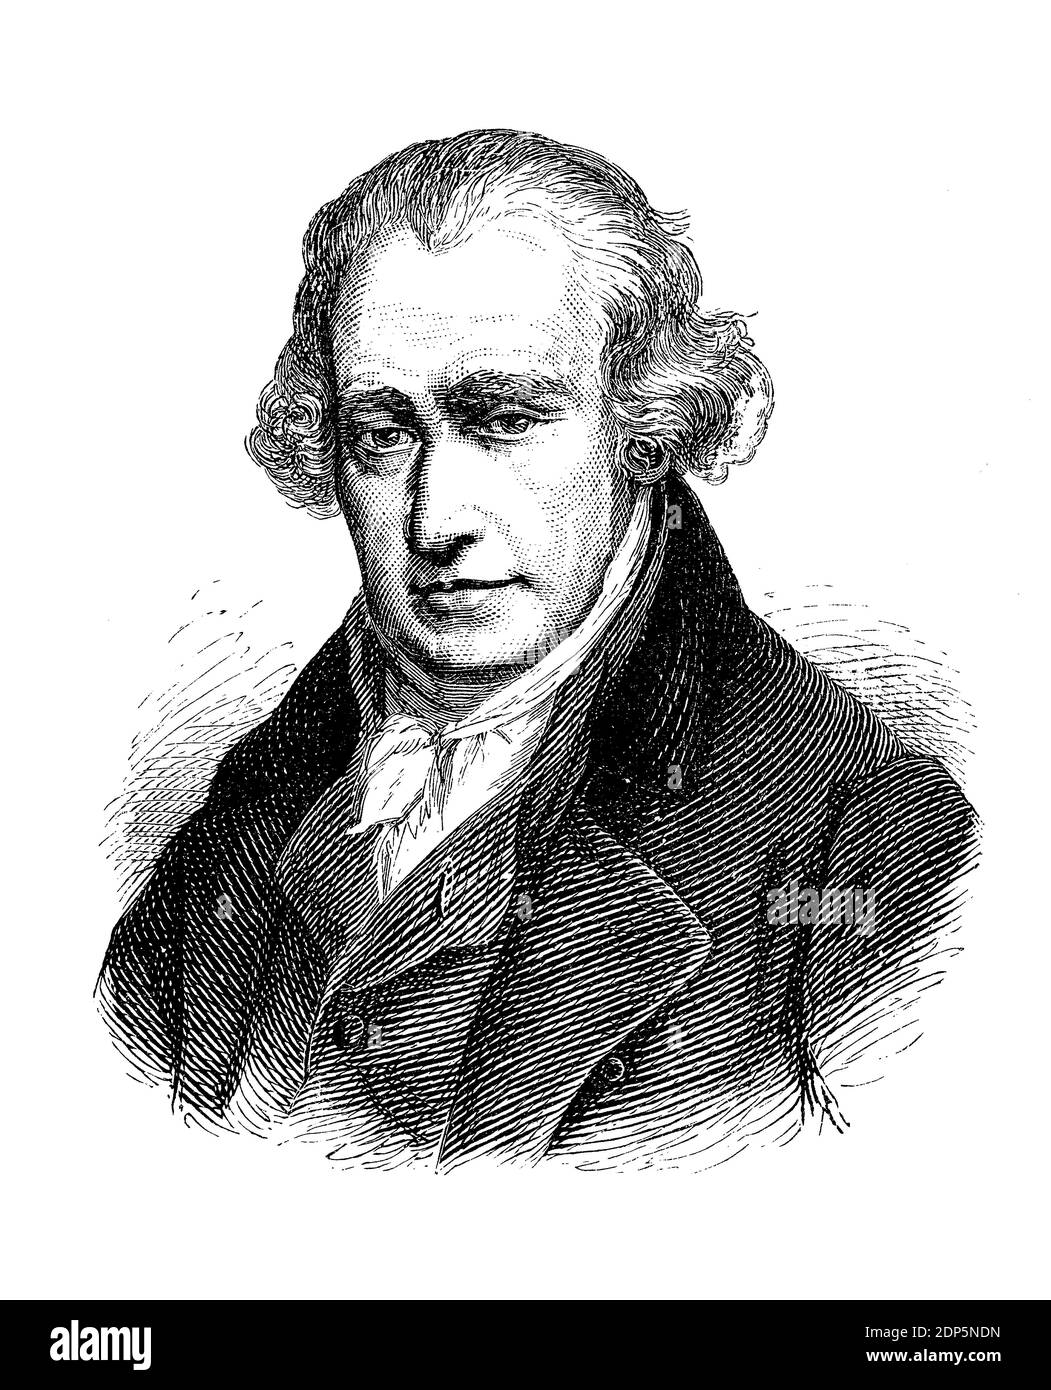 Portrait de James Watt (1736–1819) inventeur écossais, ingénieur en mécanique et chimiste, célèbre pour son moteur à vapeur d'une puissance et d'une efficacité améliorées Banque D'Images